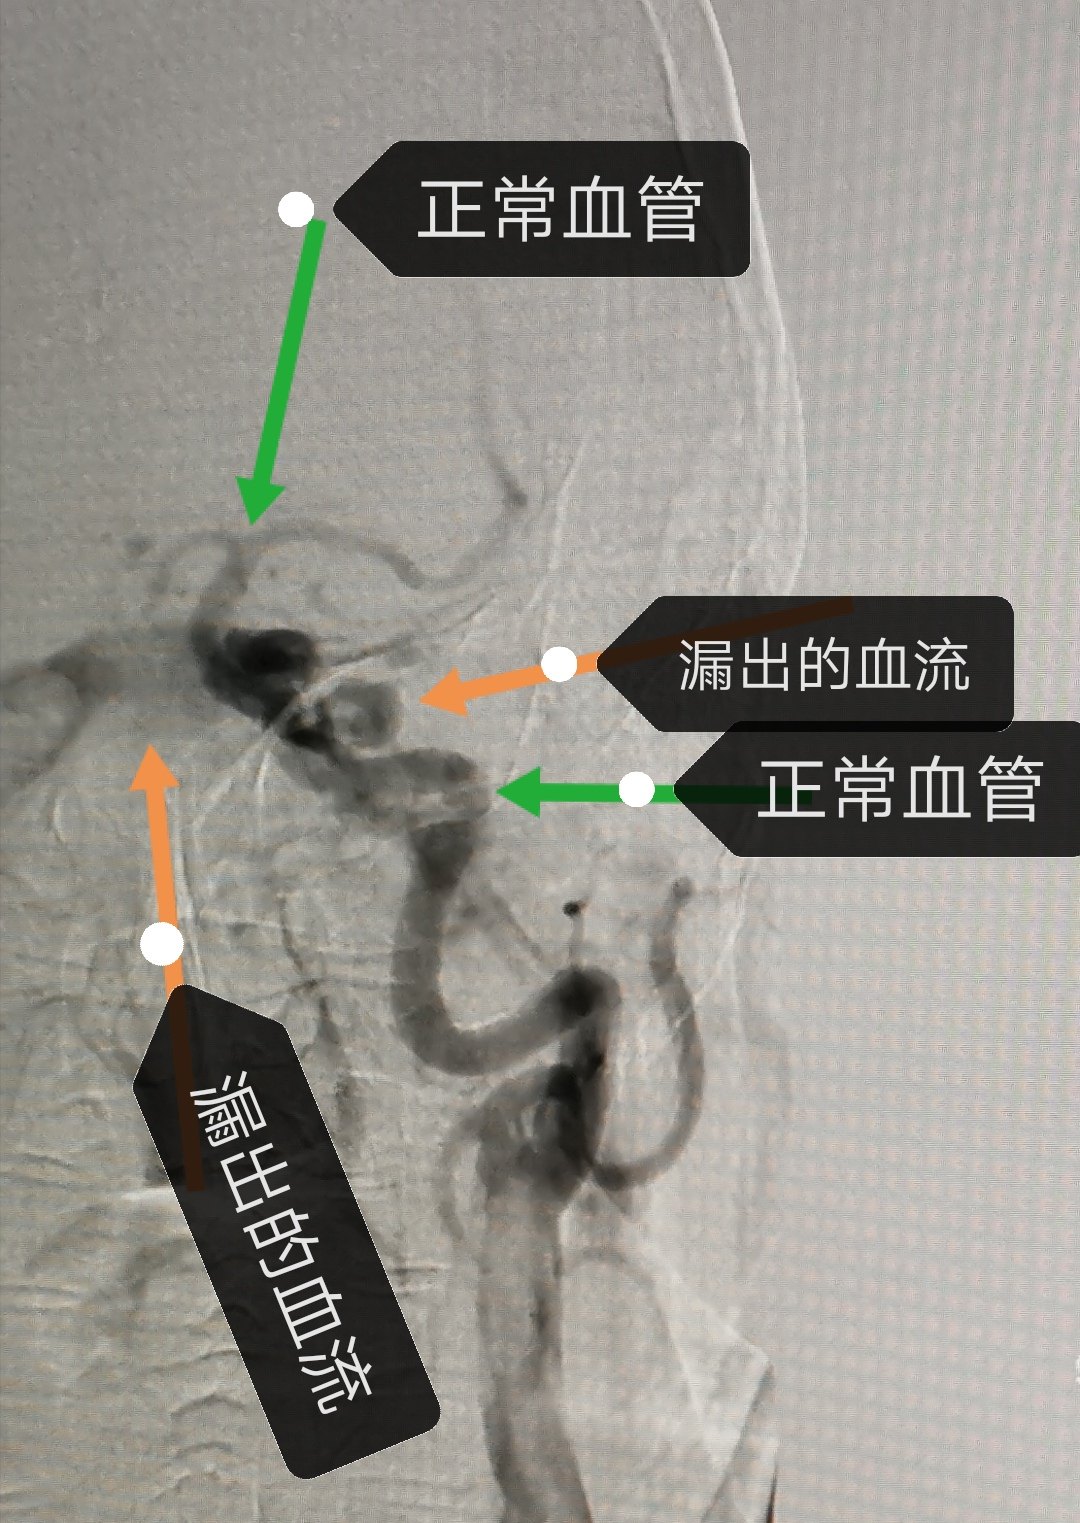 颈动脉海绵窦瘘图片图片